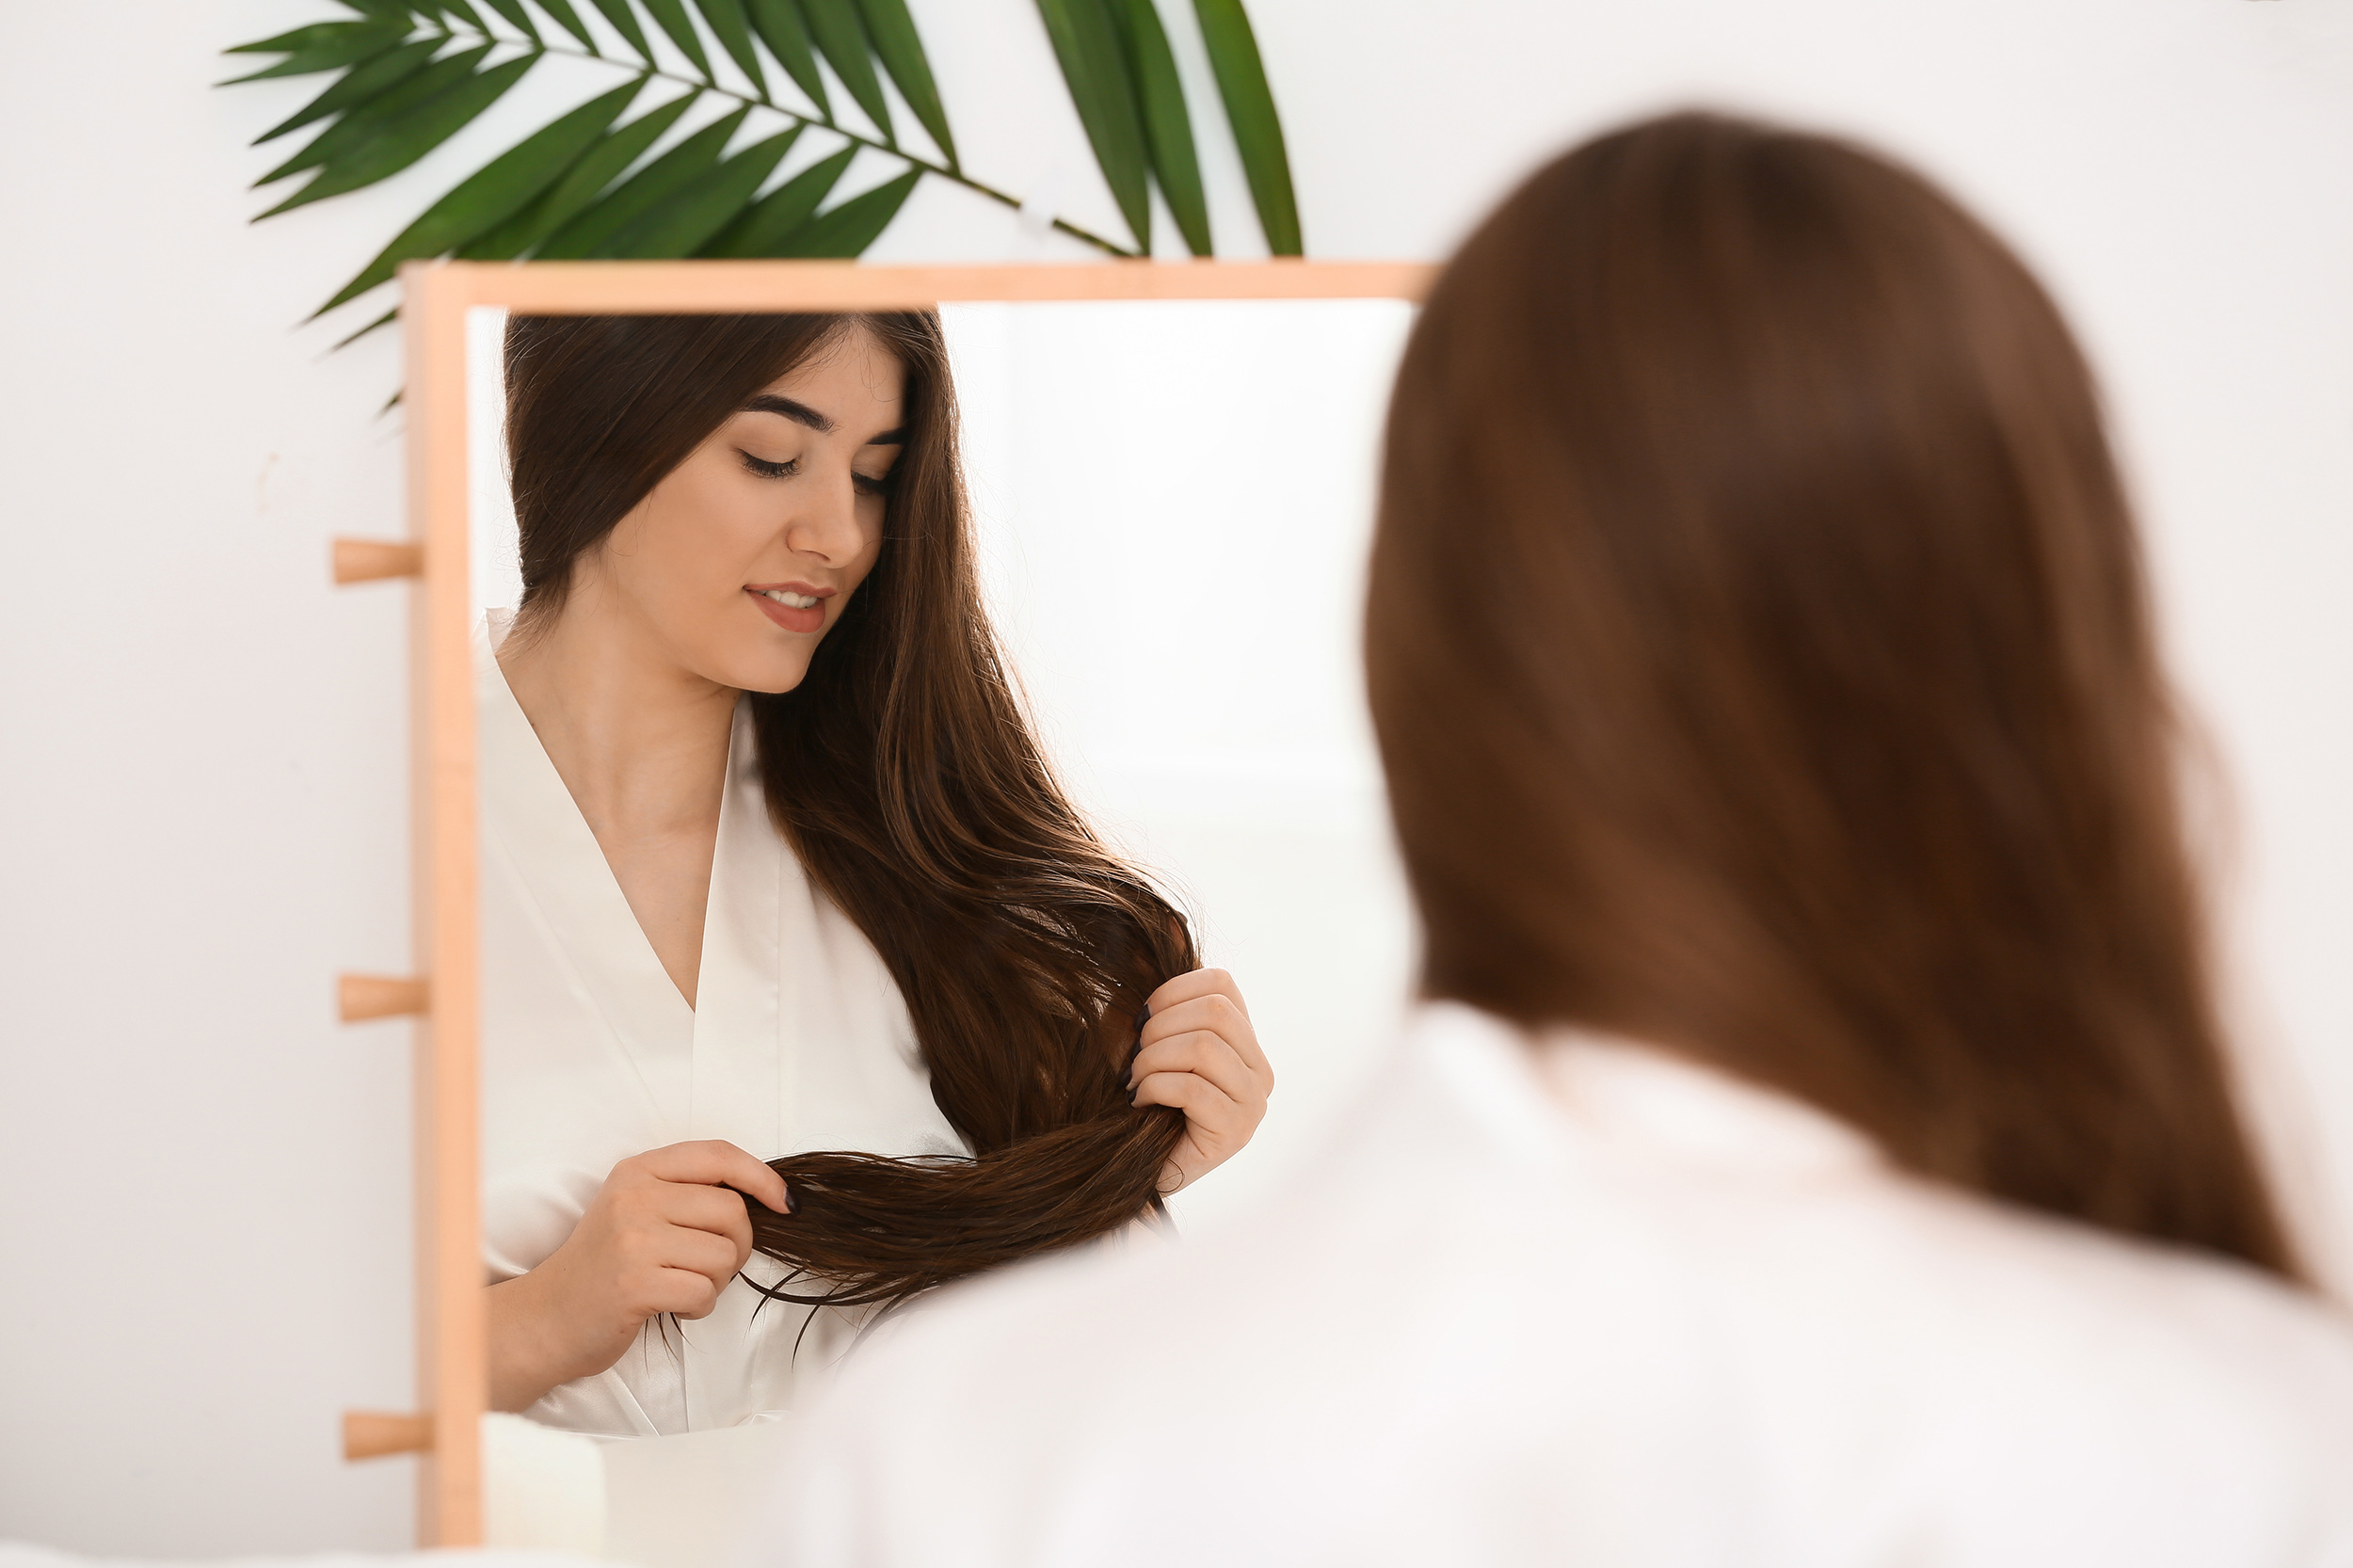 Ruskeahiuksinen nainen peilaa itseään peilistä ja harjaa hiuksiaan